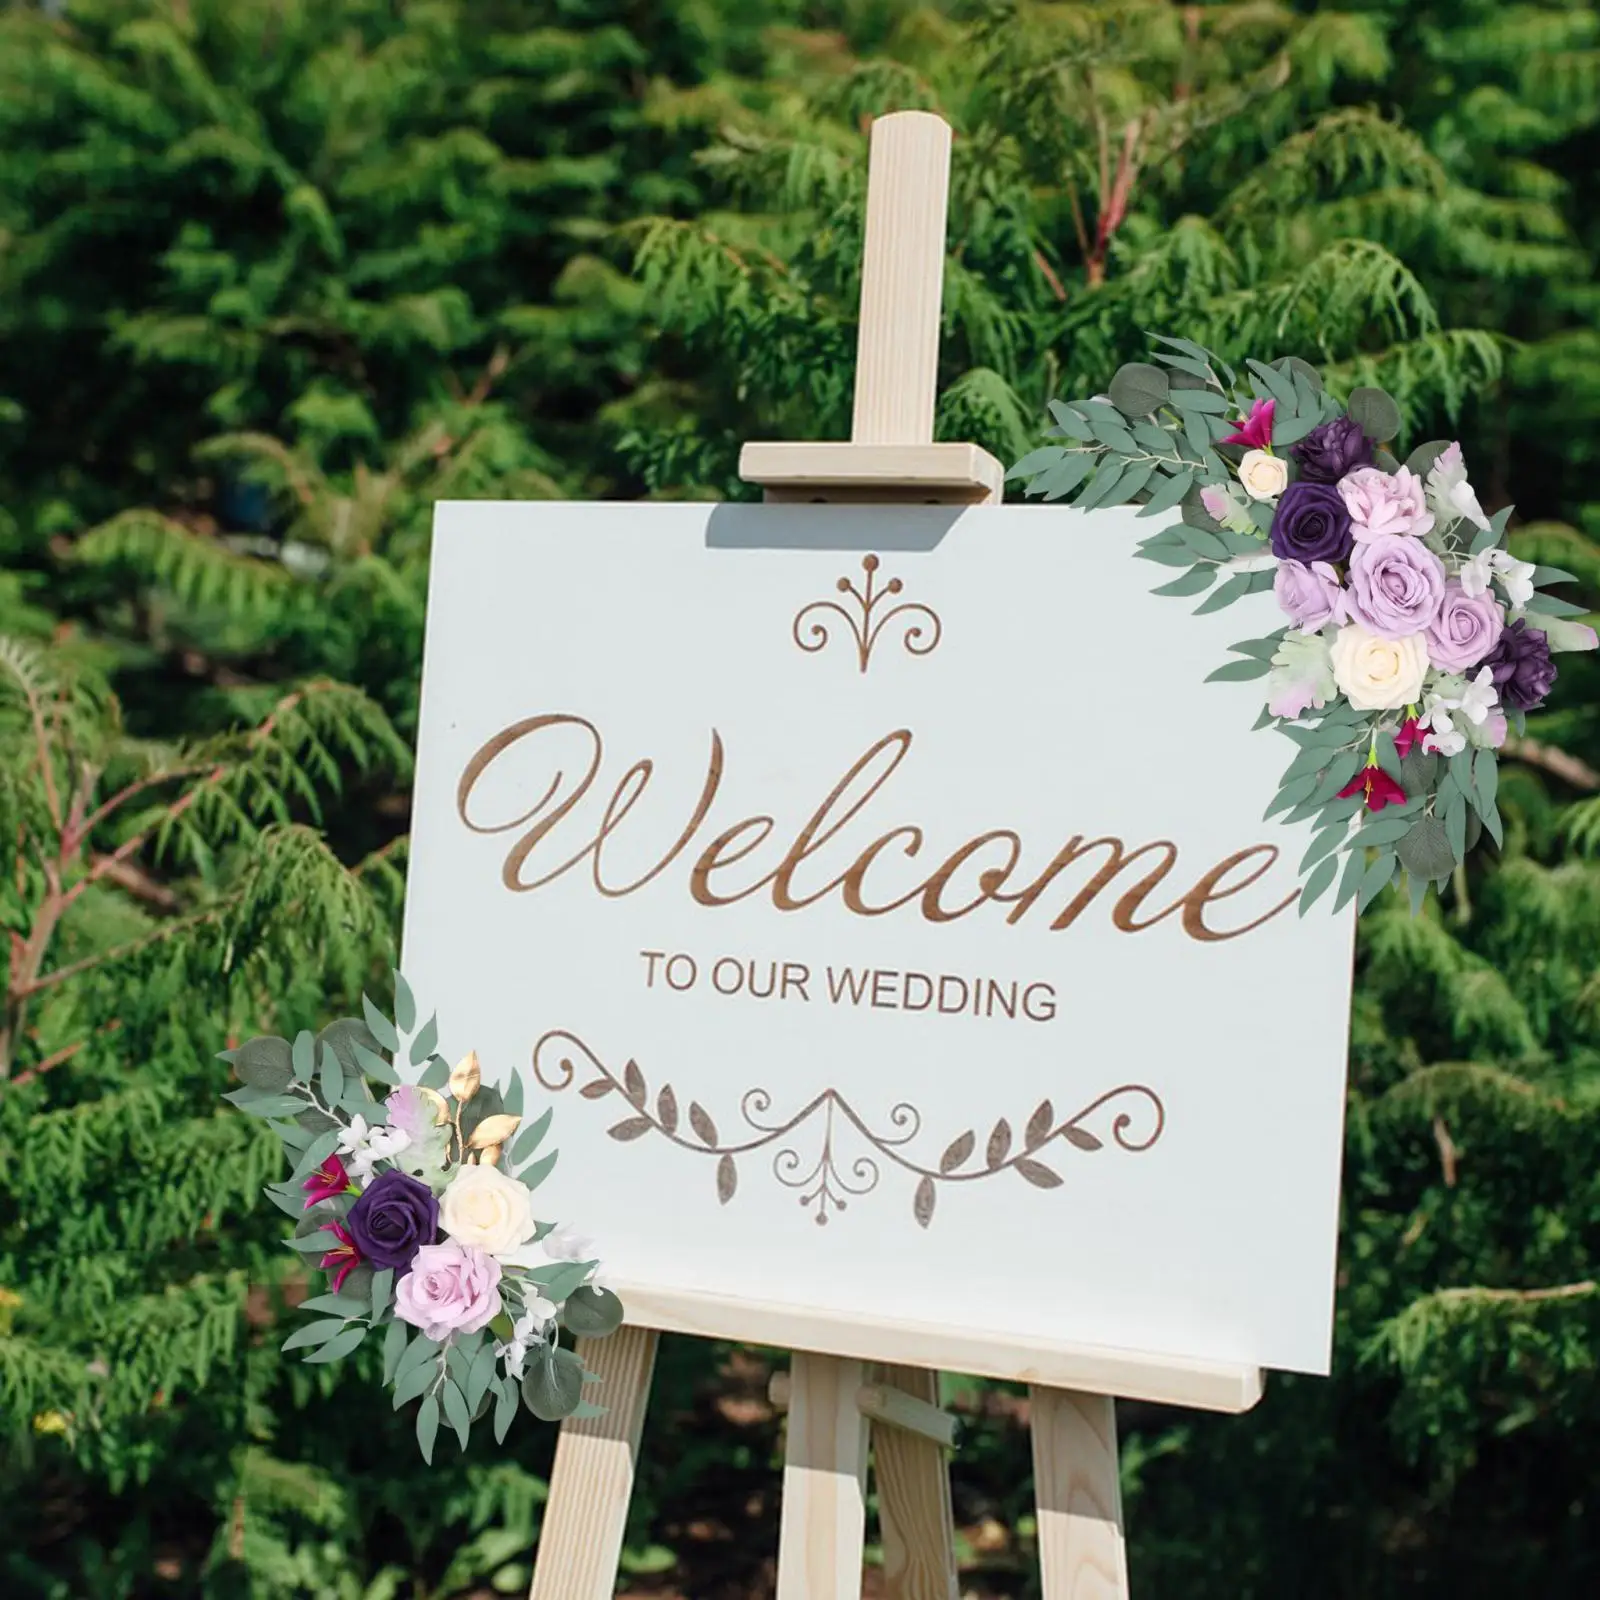 2x Wedding Arch Flower Swag Floral Swags Decorative Wedding Arch Rose Wreath for Home Backdrop Wedding Car Arbor Wedding Chair